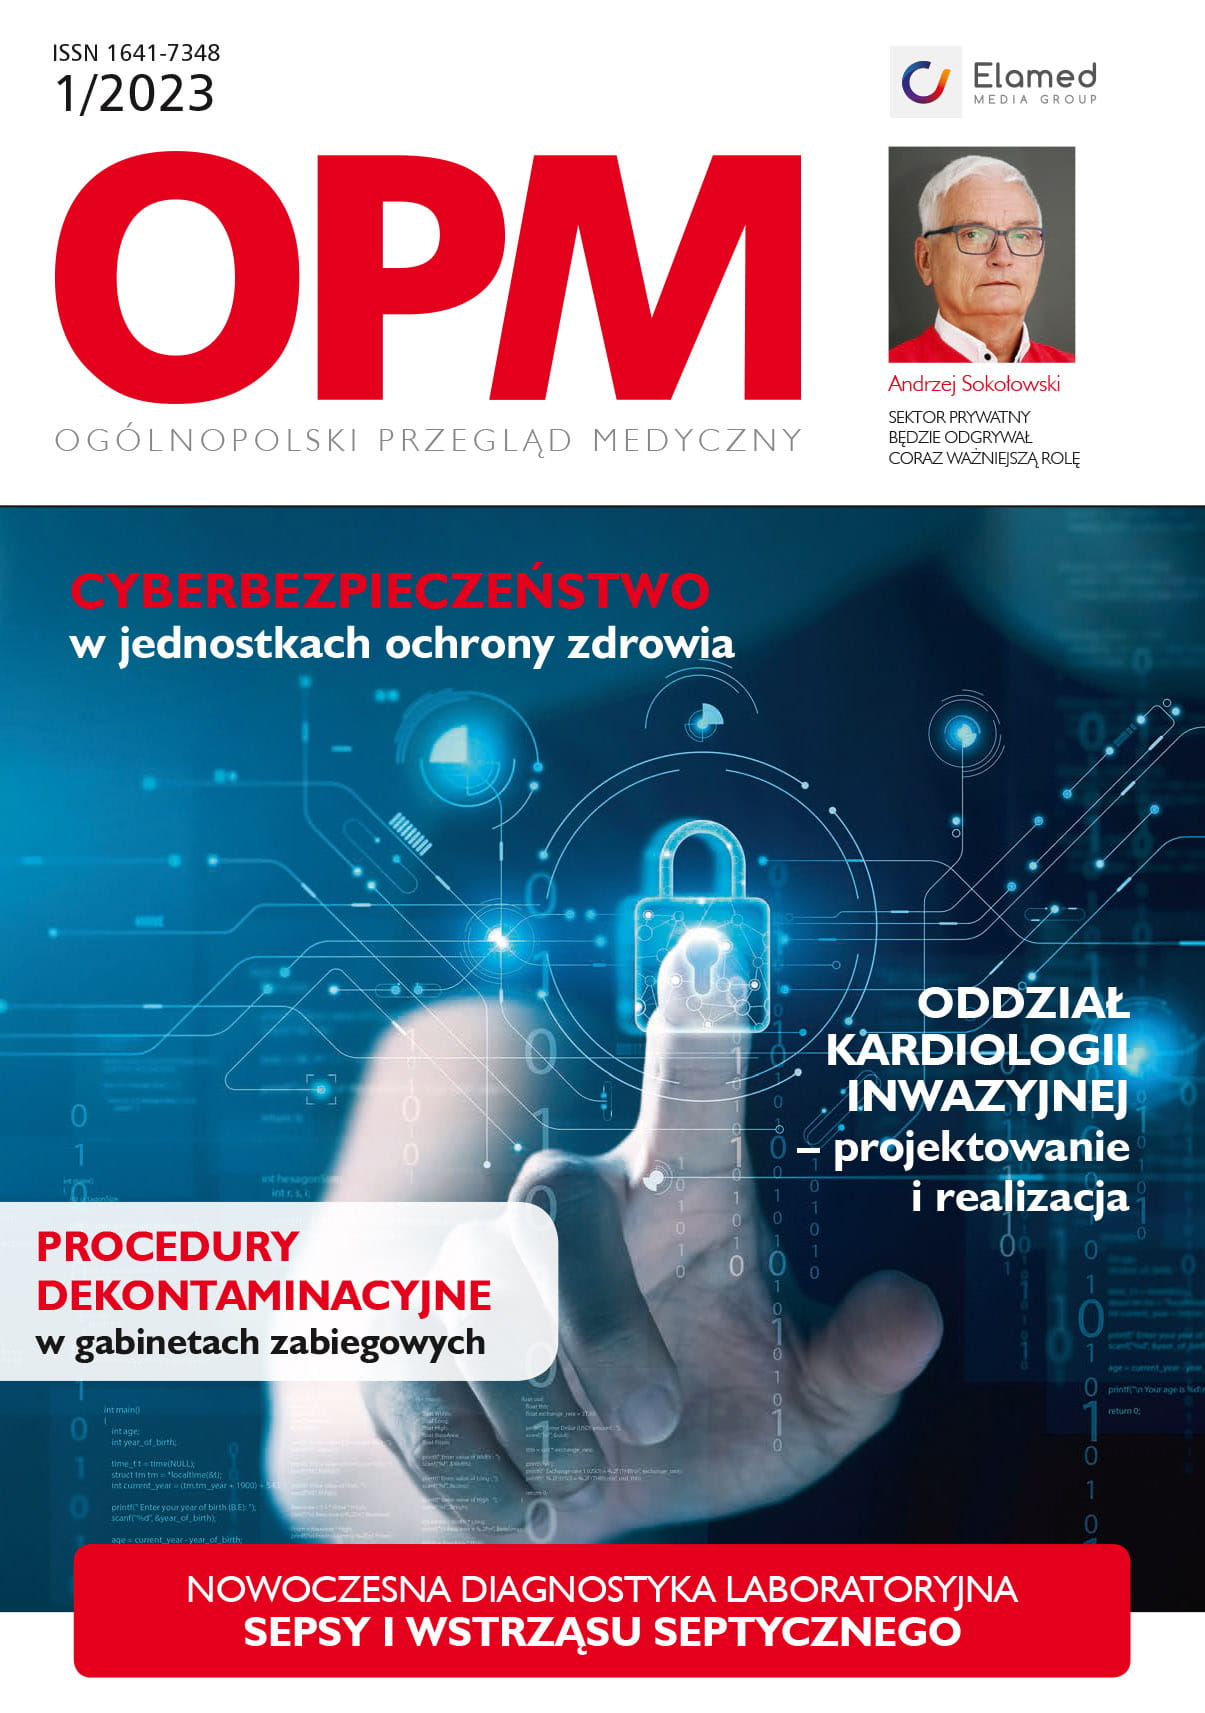 OPM – Ogólnopolski Przegląd Medyczny nr 6/2022